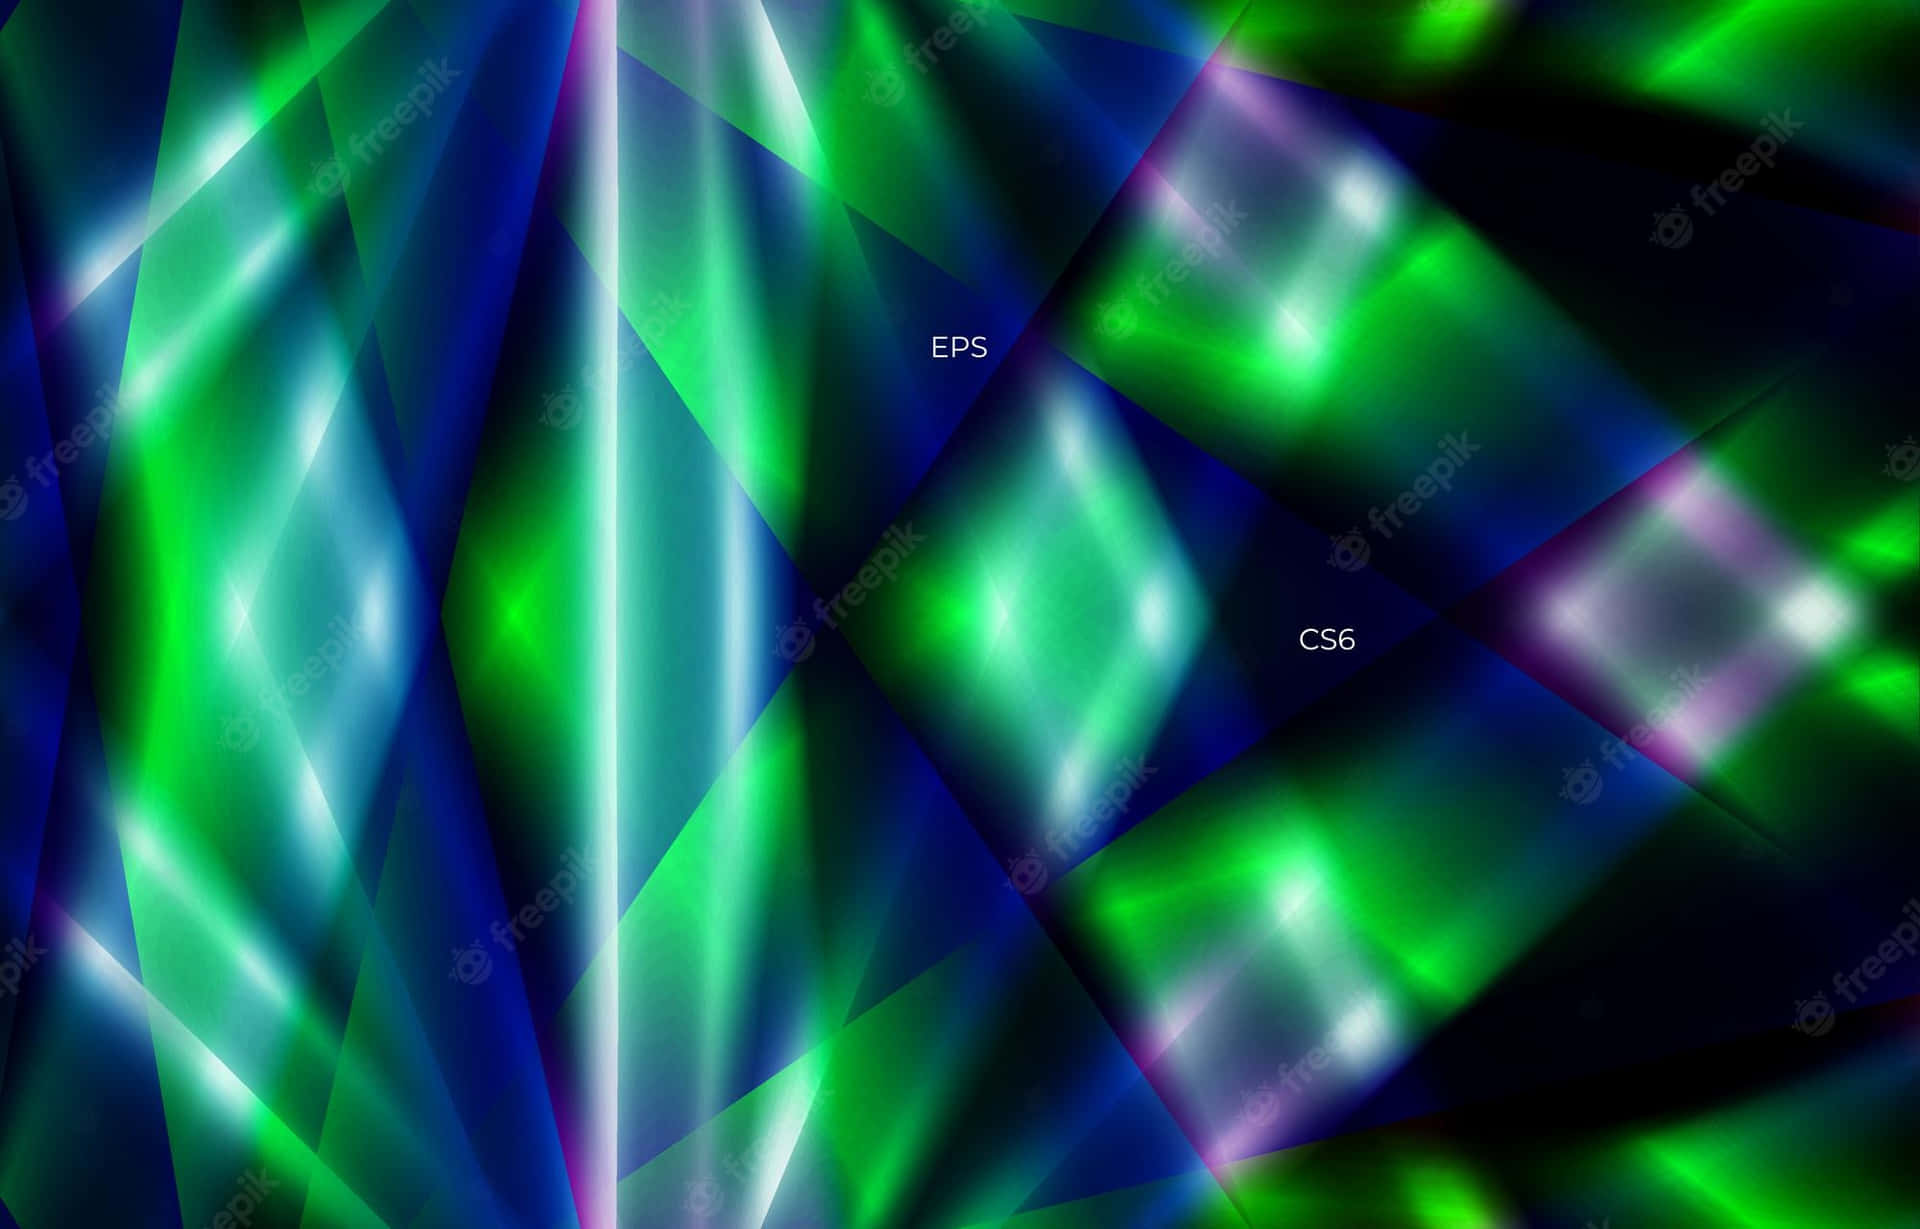 Ljusgröntoch Lila Neon Lyser Upp Tillsammans I Perfekt Harmoni På Datorskärmen Eller Mobilen Som Bakgrundsbild. Wallpaper